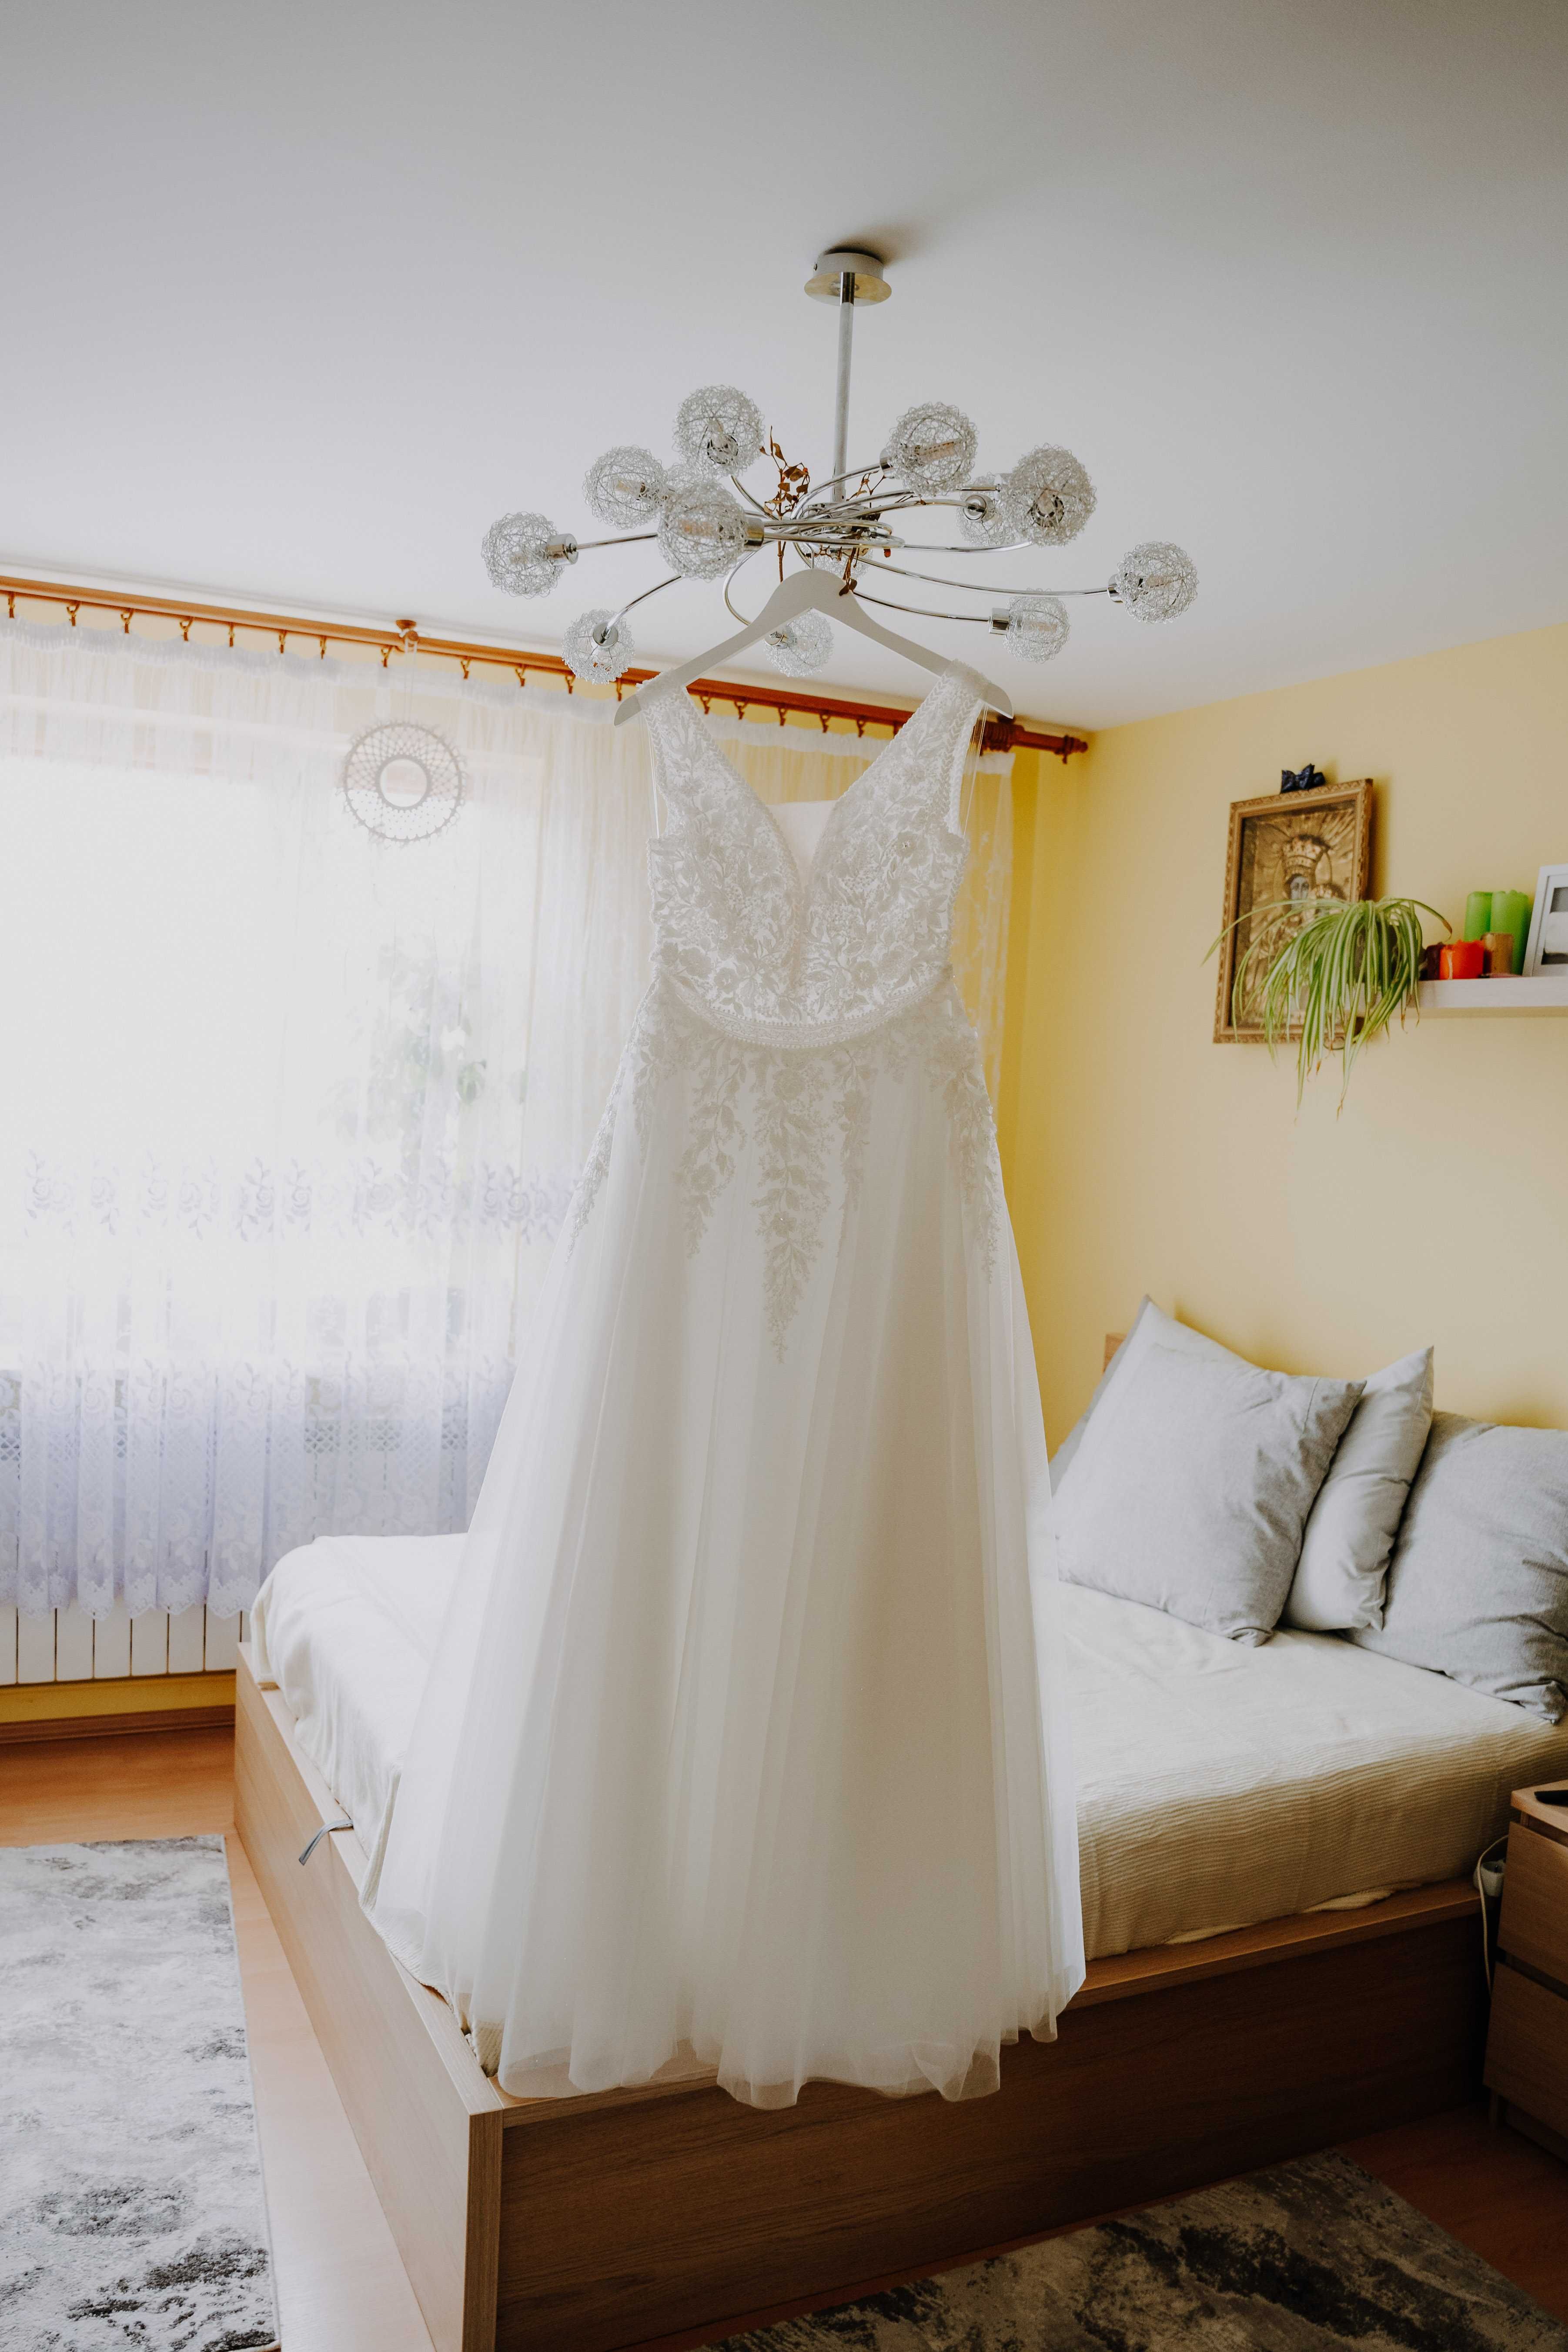 Suknia ślubna A rozm 40 koronkowa z tiulem, 176 cm wzrost + 5cm obcas